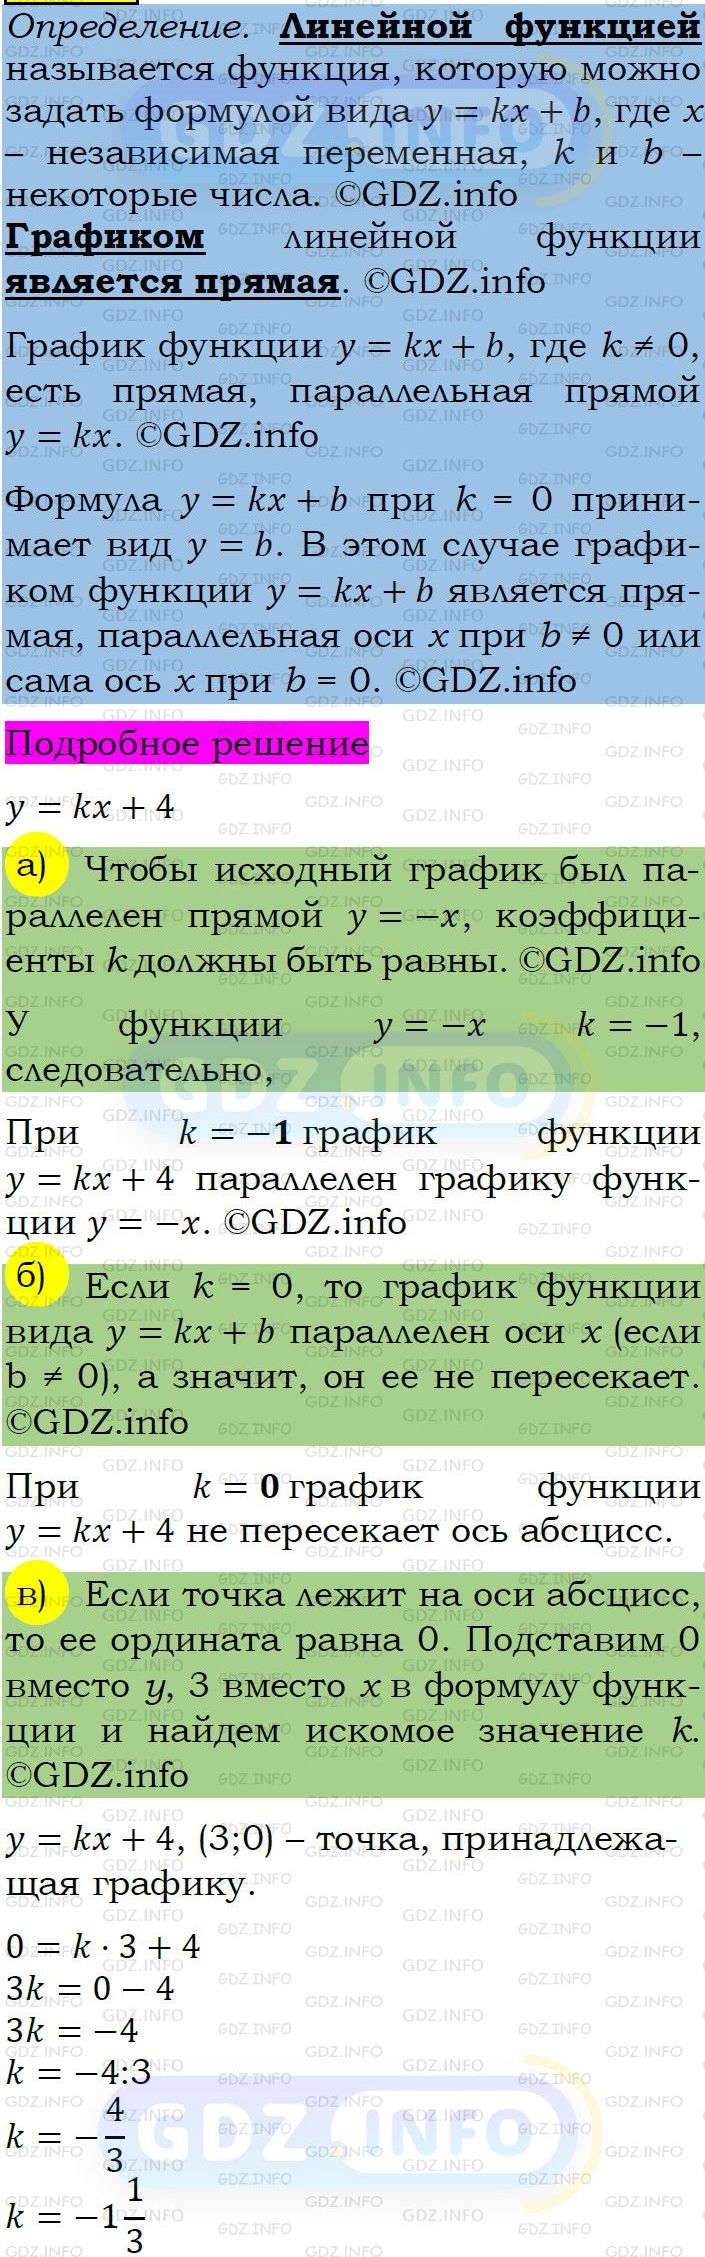 Фото подробного решения: Номер задания №320 из ГДЗ по Алгебре 7 класс: Макарычев Ю.Н.